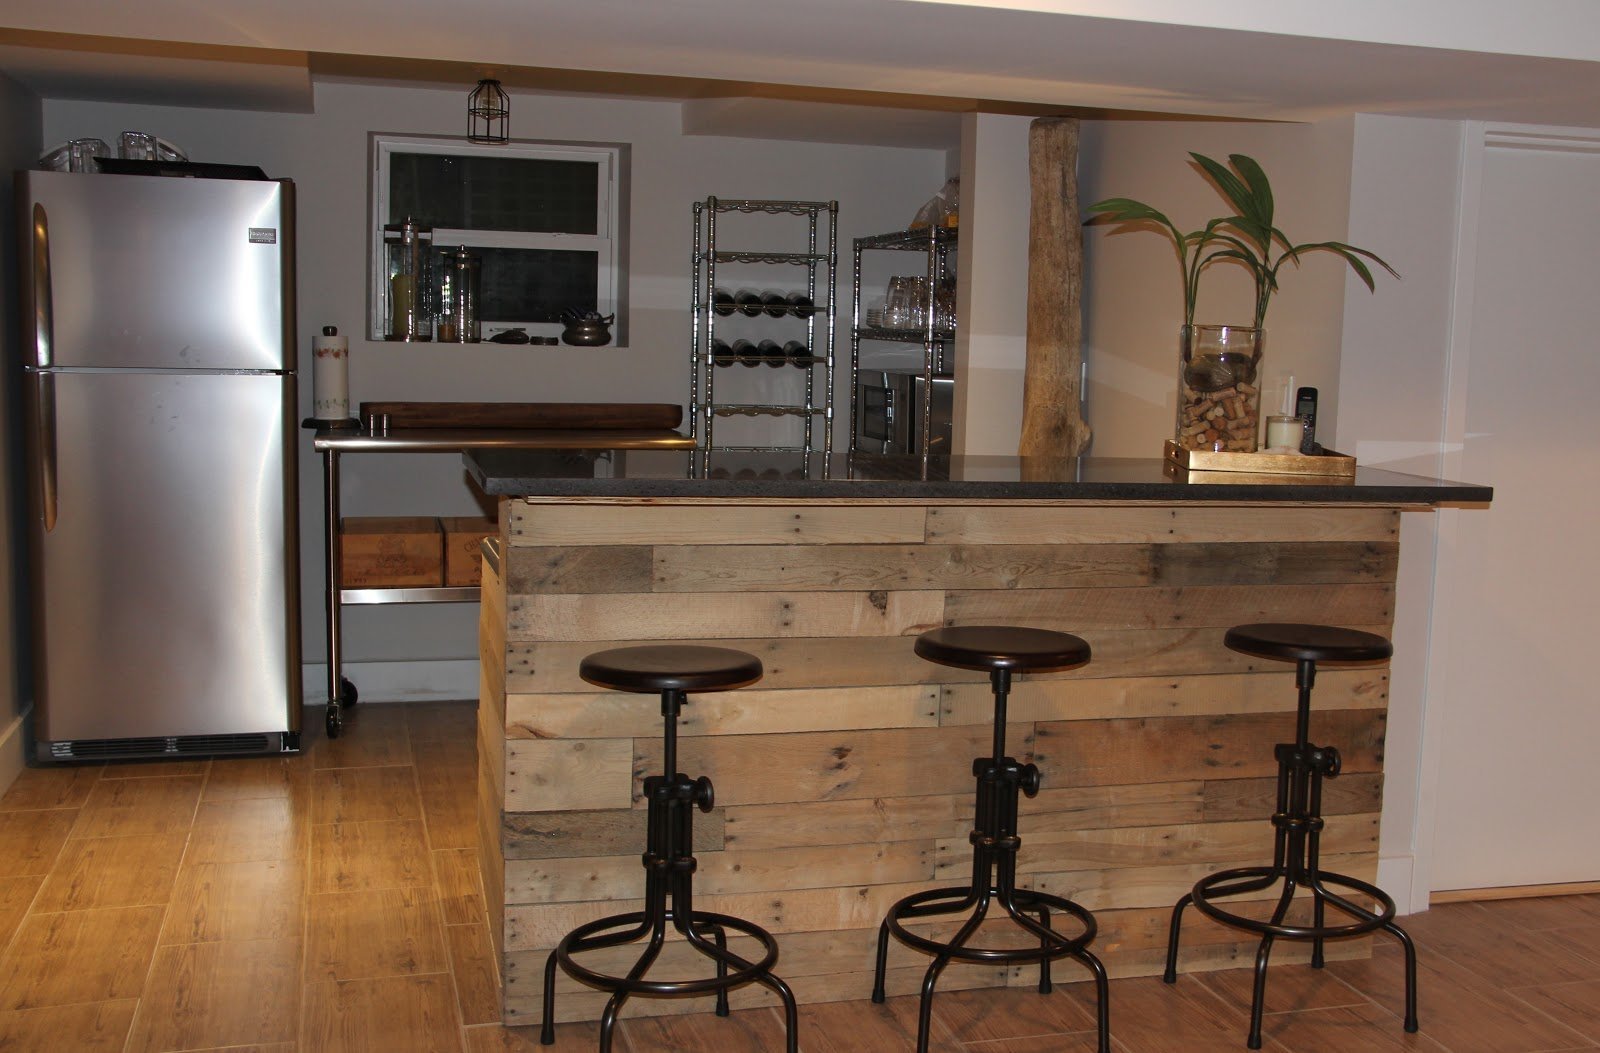 Высота барной стойки на кухне и особенности её размеров для разных помещений